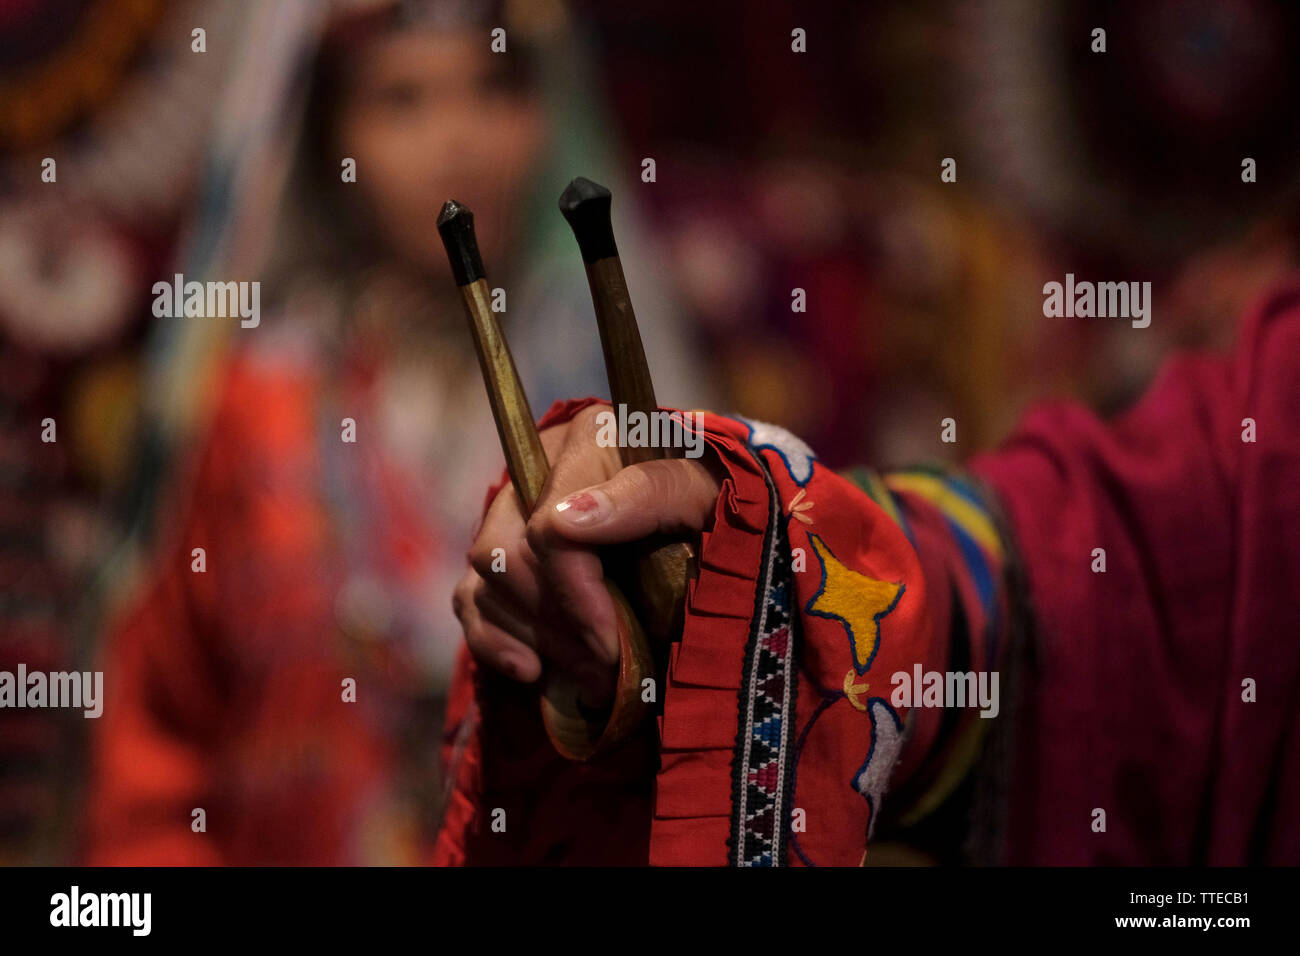 Usbekische Frau in traditioneller Tracht aus dem Gebiet Surchandarja Region in der Nähe der südlichen Grenze zu Tadschikistan mit Holzlöffel für Percussion während der Löffel Tanz. Usbekistan Stockfoto